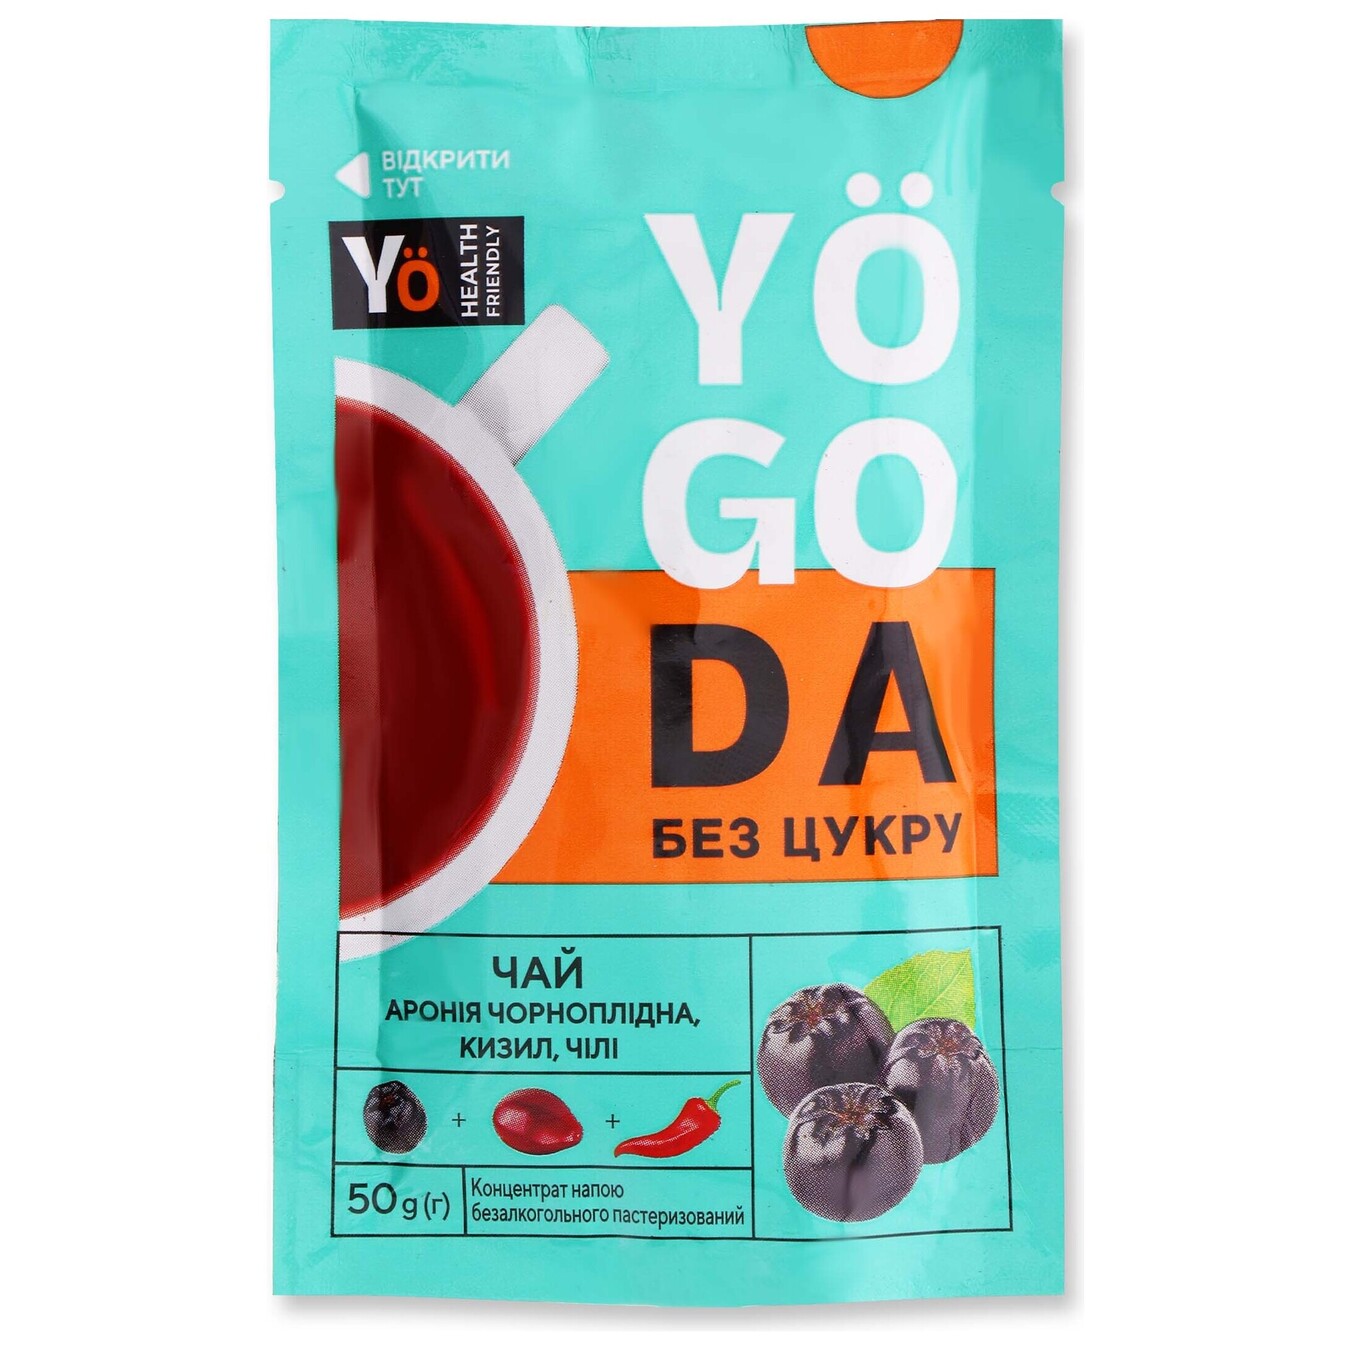 Чай концентрат Yogoda аронія чорноплідна-кизил-чілі 50г